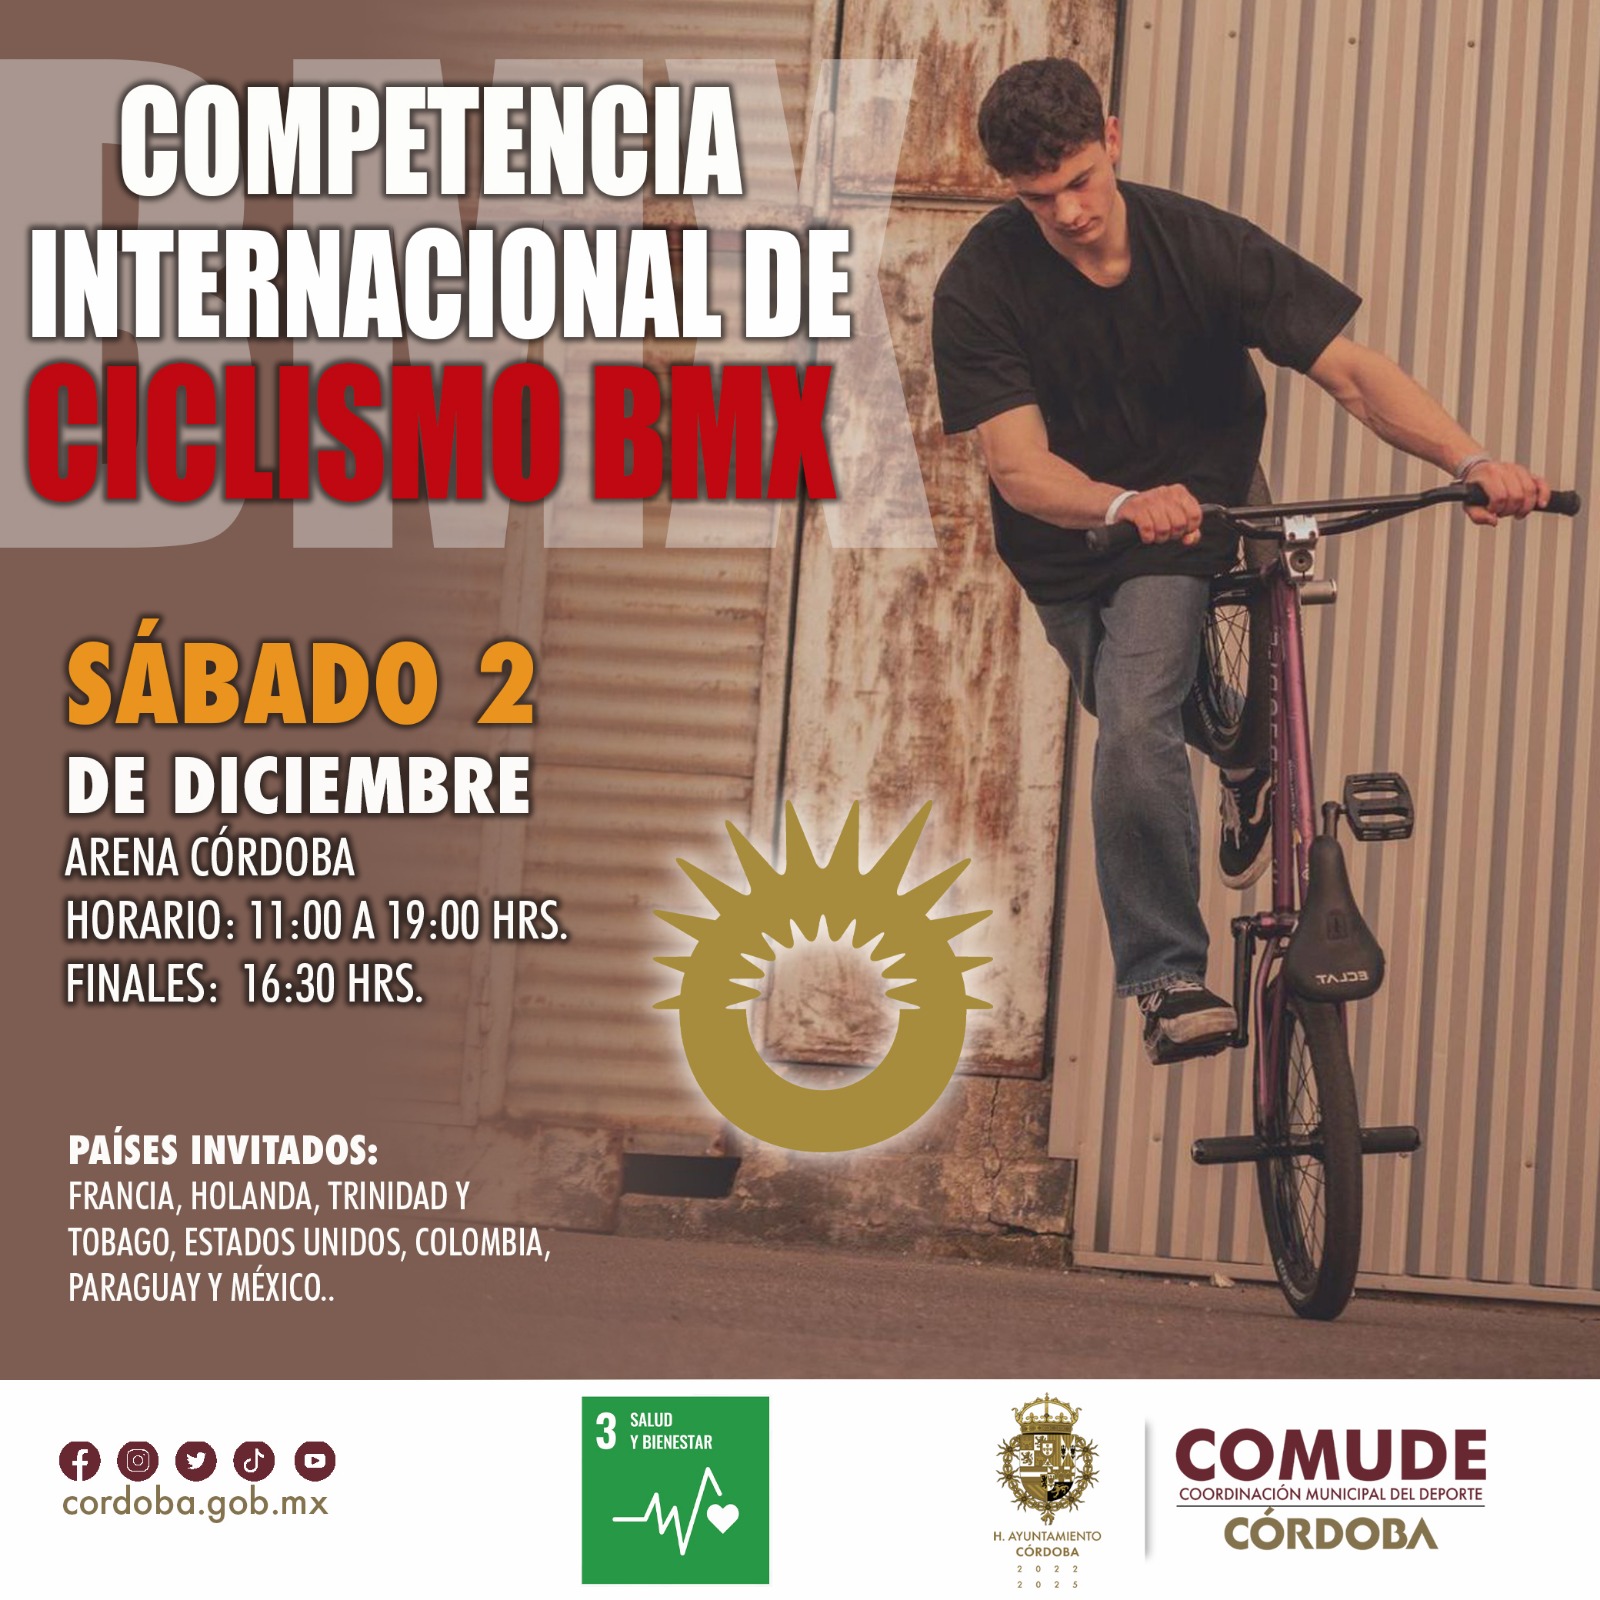 Competencia Internacional de Ciclismo BMX